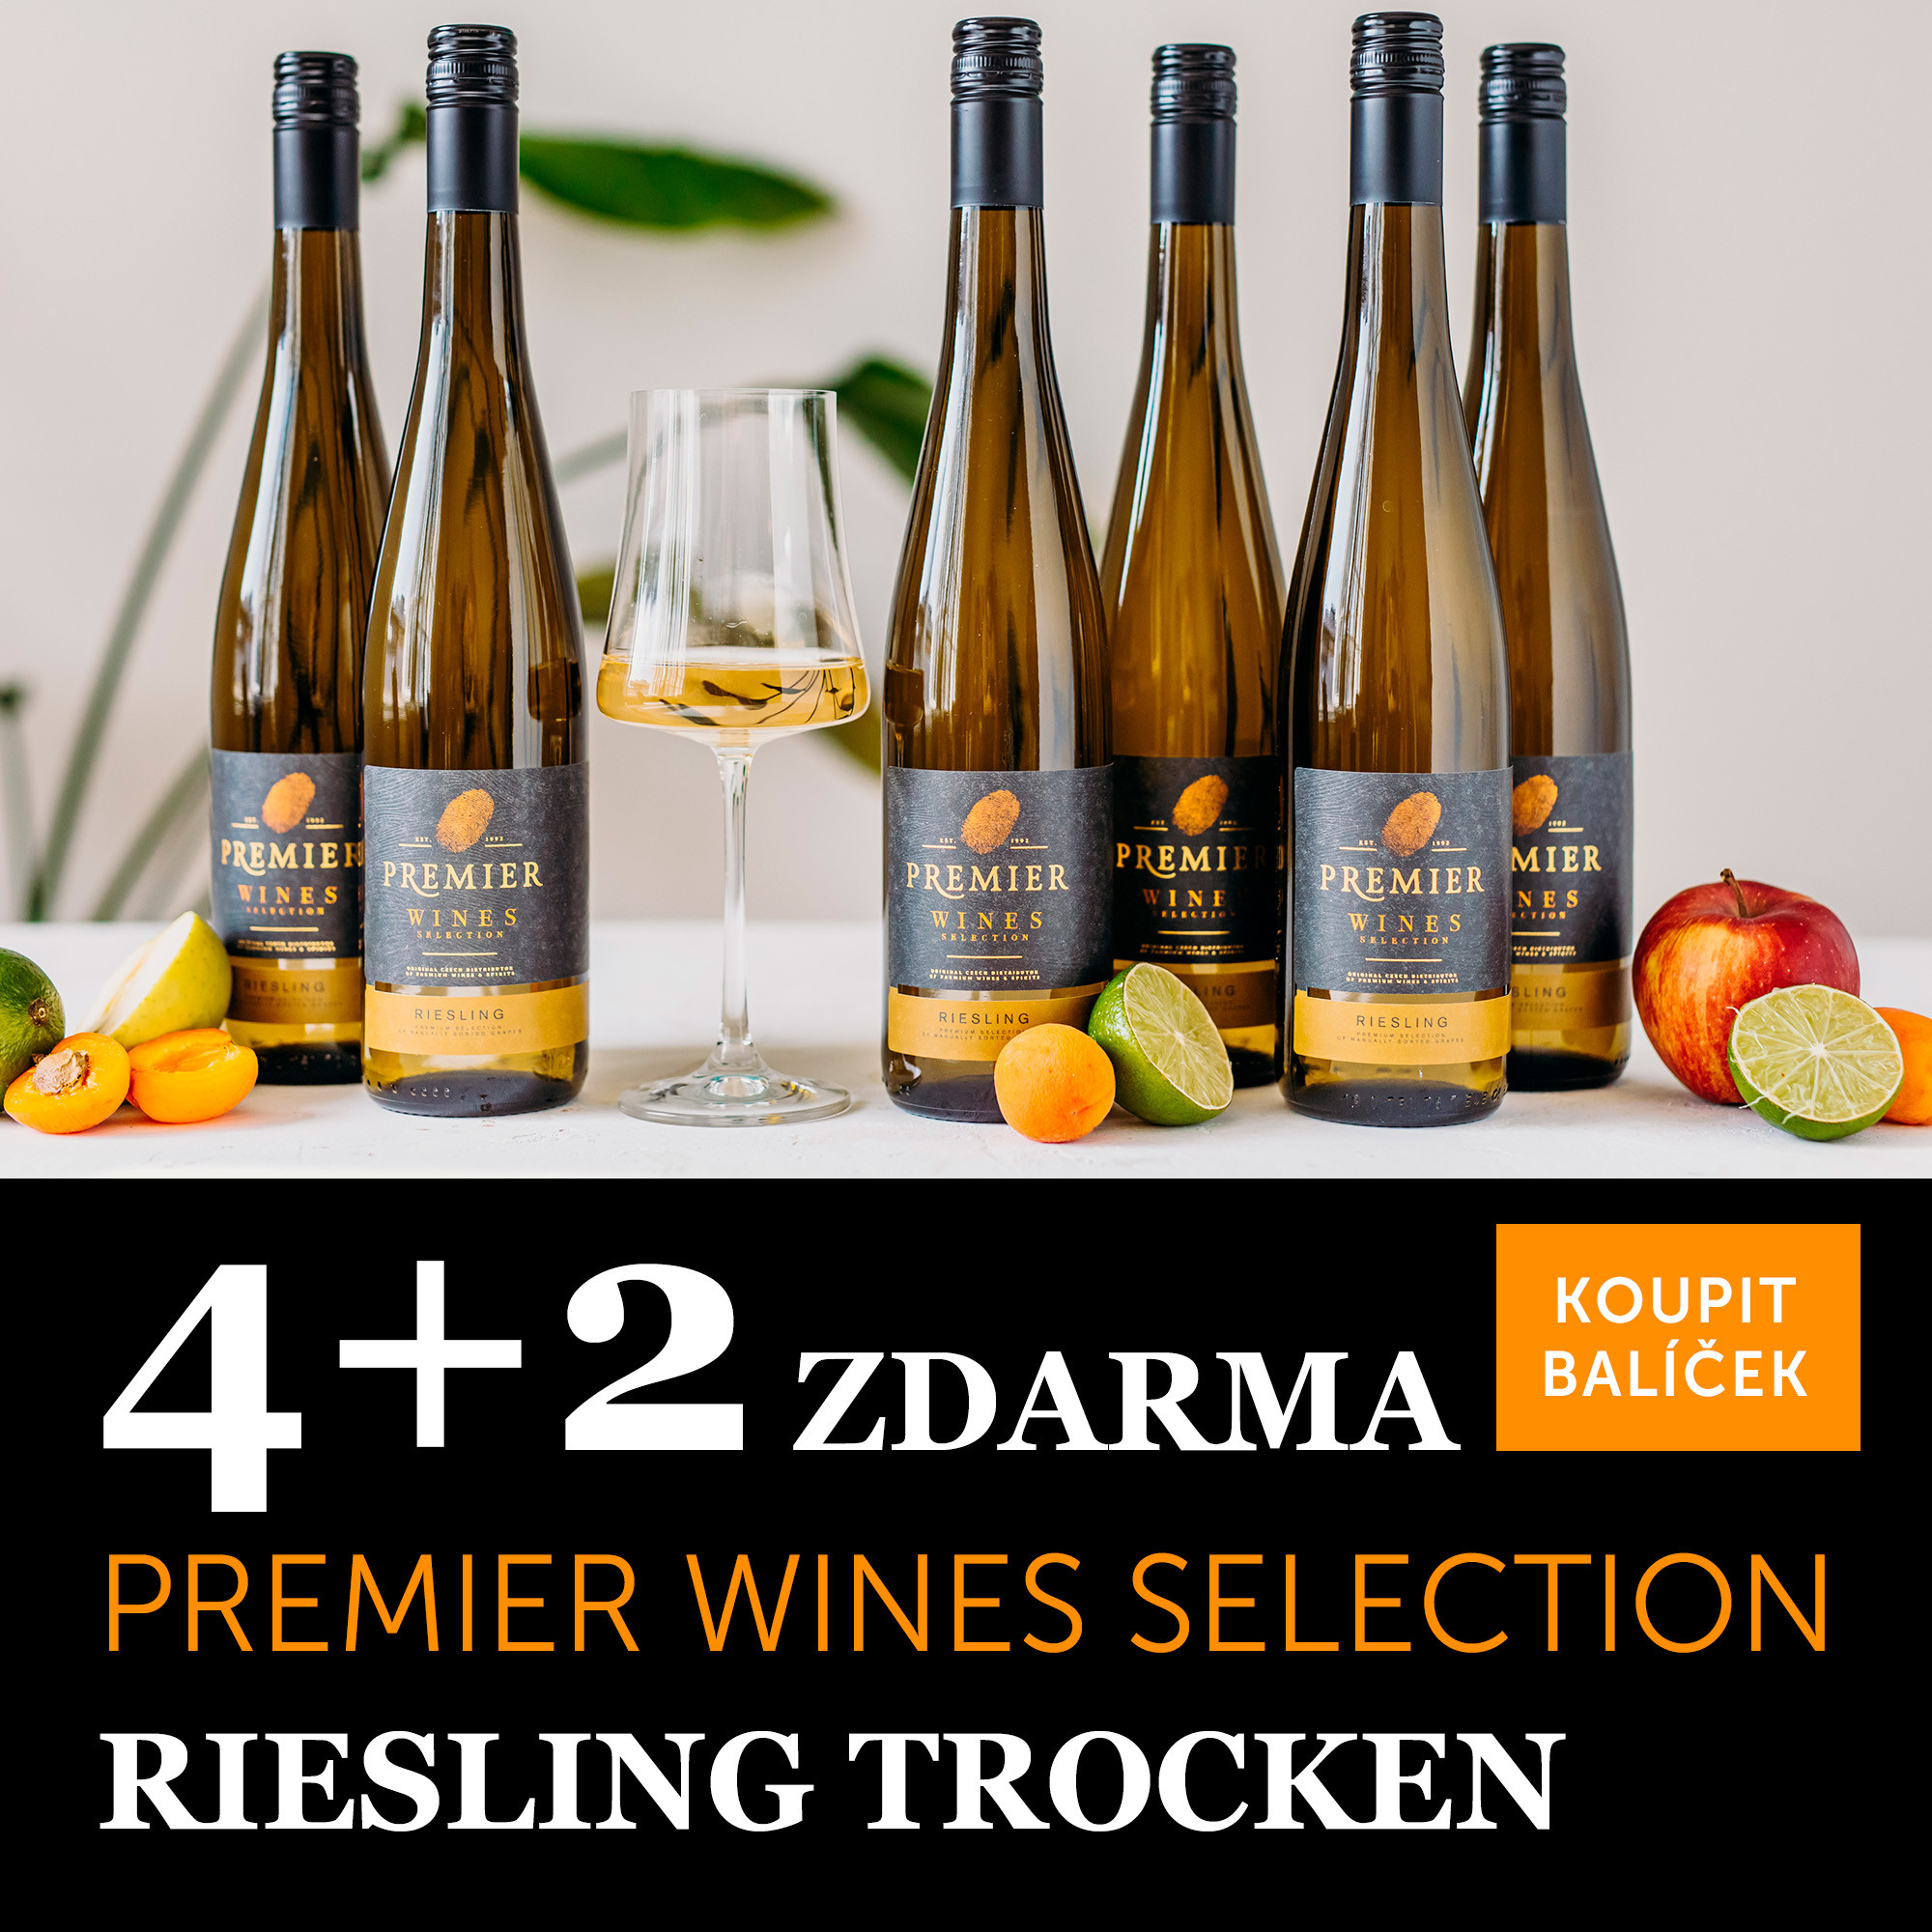 Premier Wines Selection Riesling trocken 2022 - 4+2 zdarma - UKONČENO